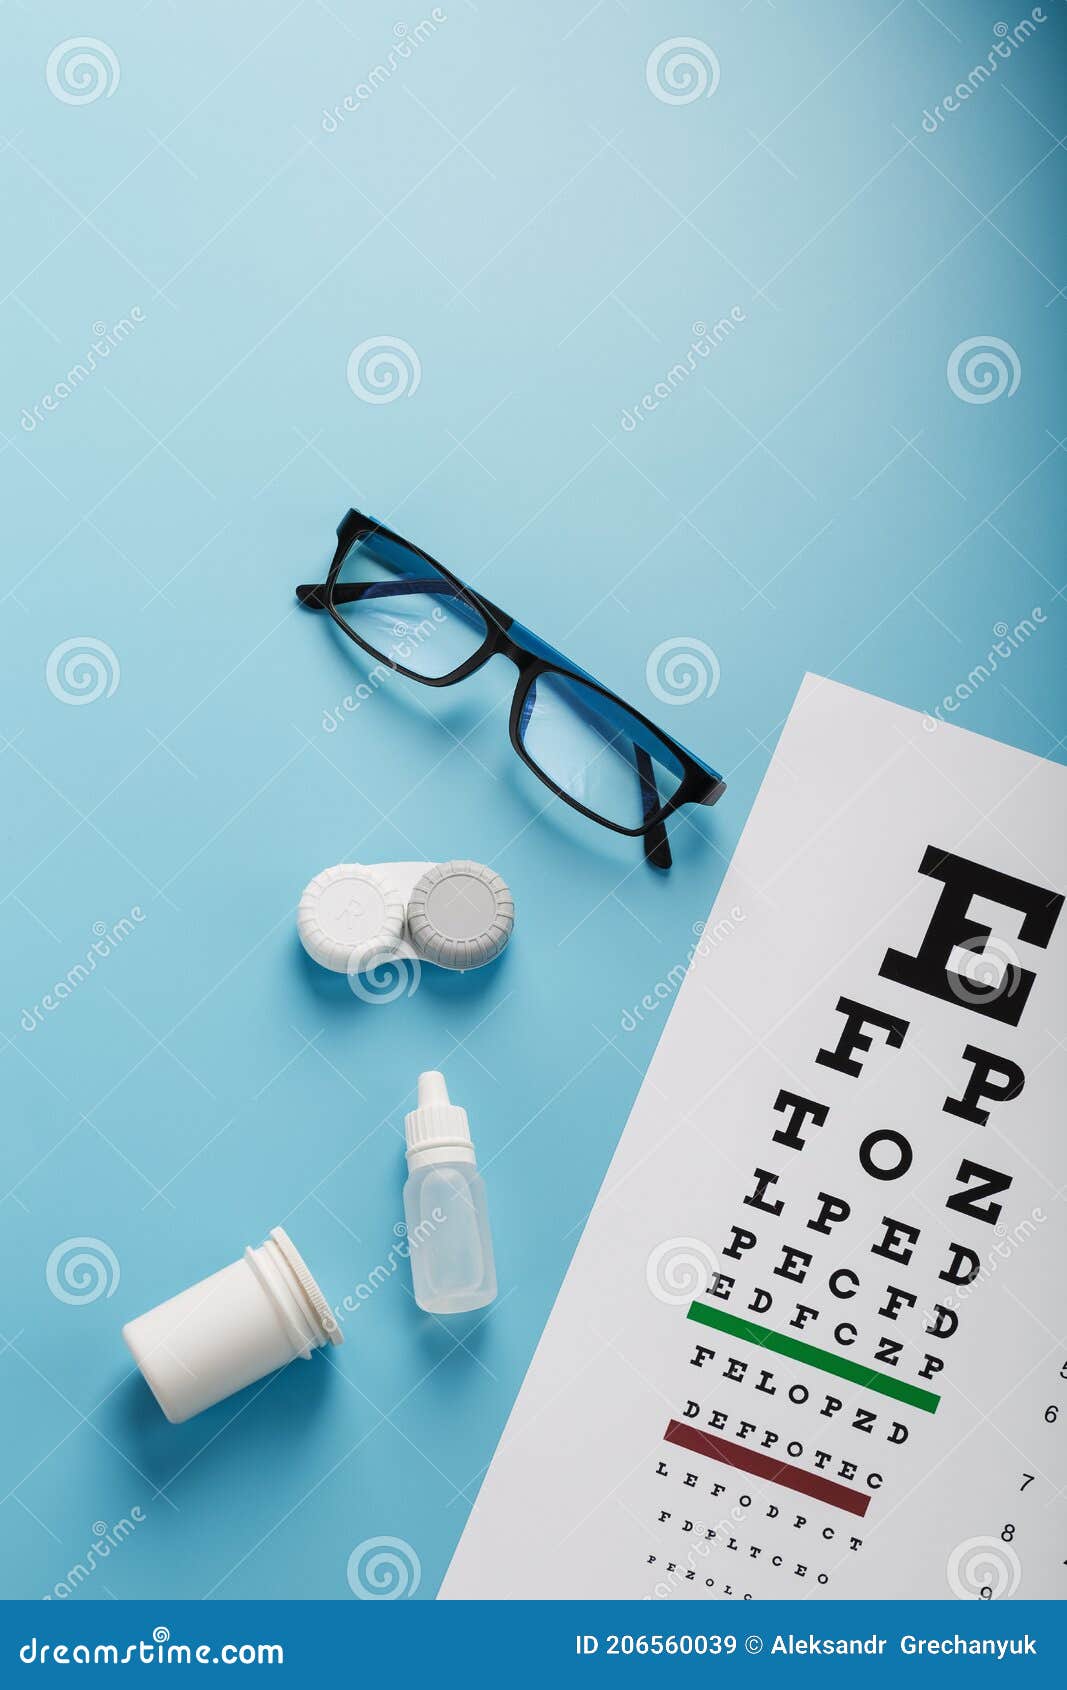 Accessoires pour lentilles et lunettes